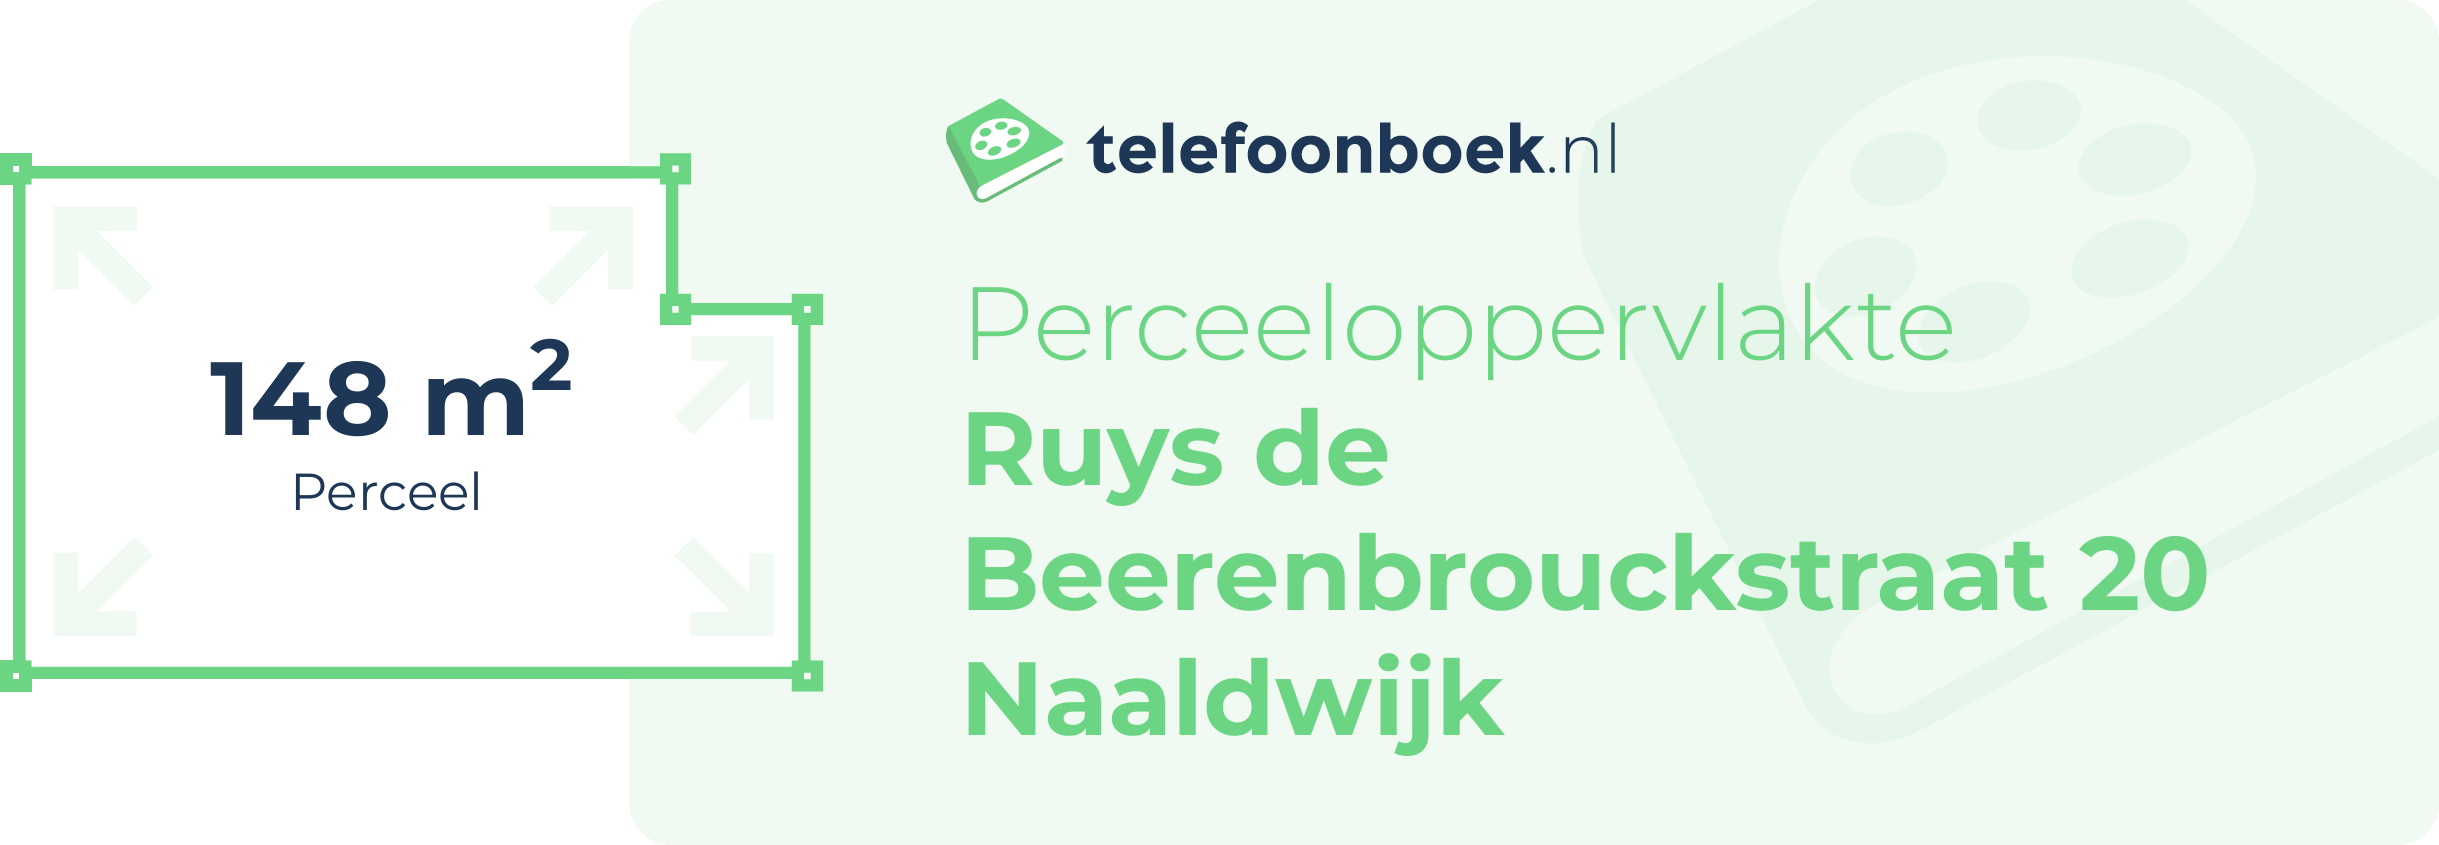 Perceeloppervlakte Ruys De Beerenbrouckstraat 20 Naaldwijk